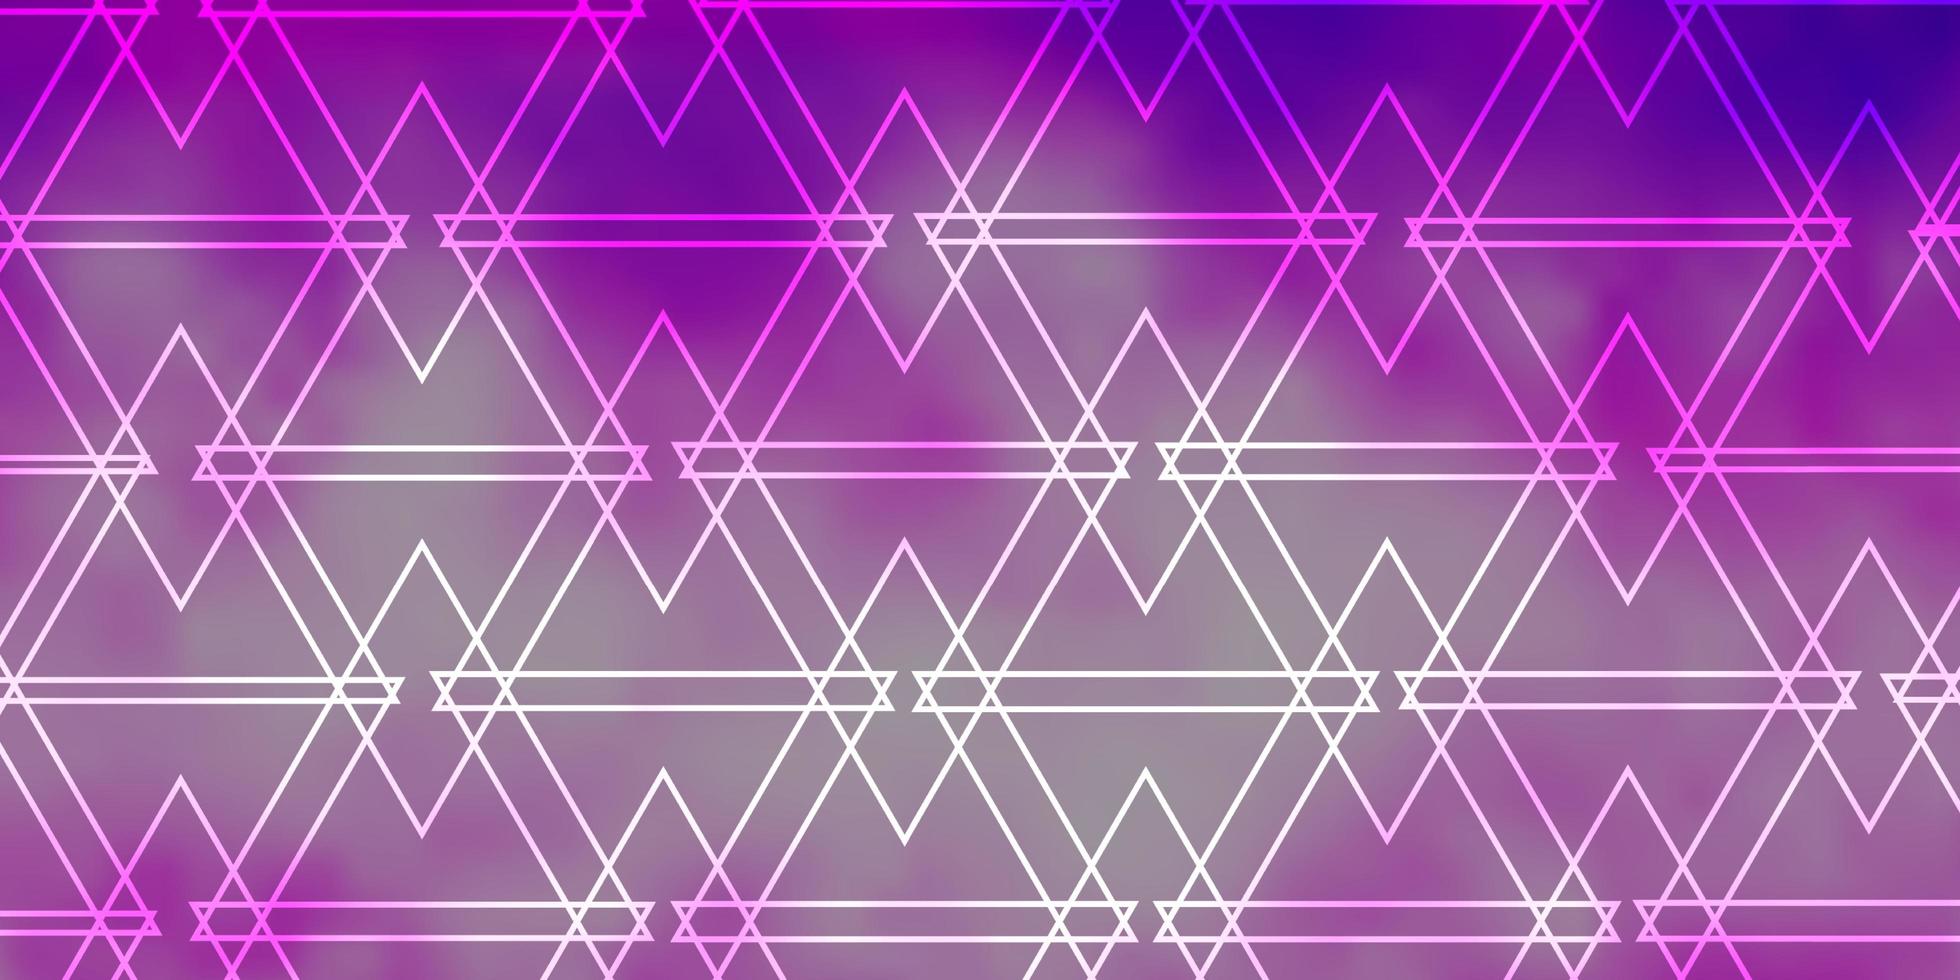 Plantilla de vector violeta, rosa claro con cristales, triángulos.